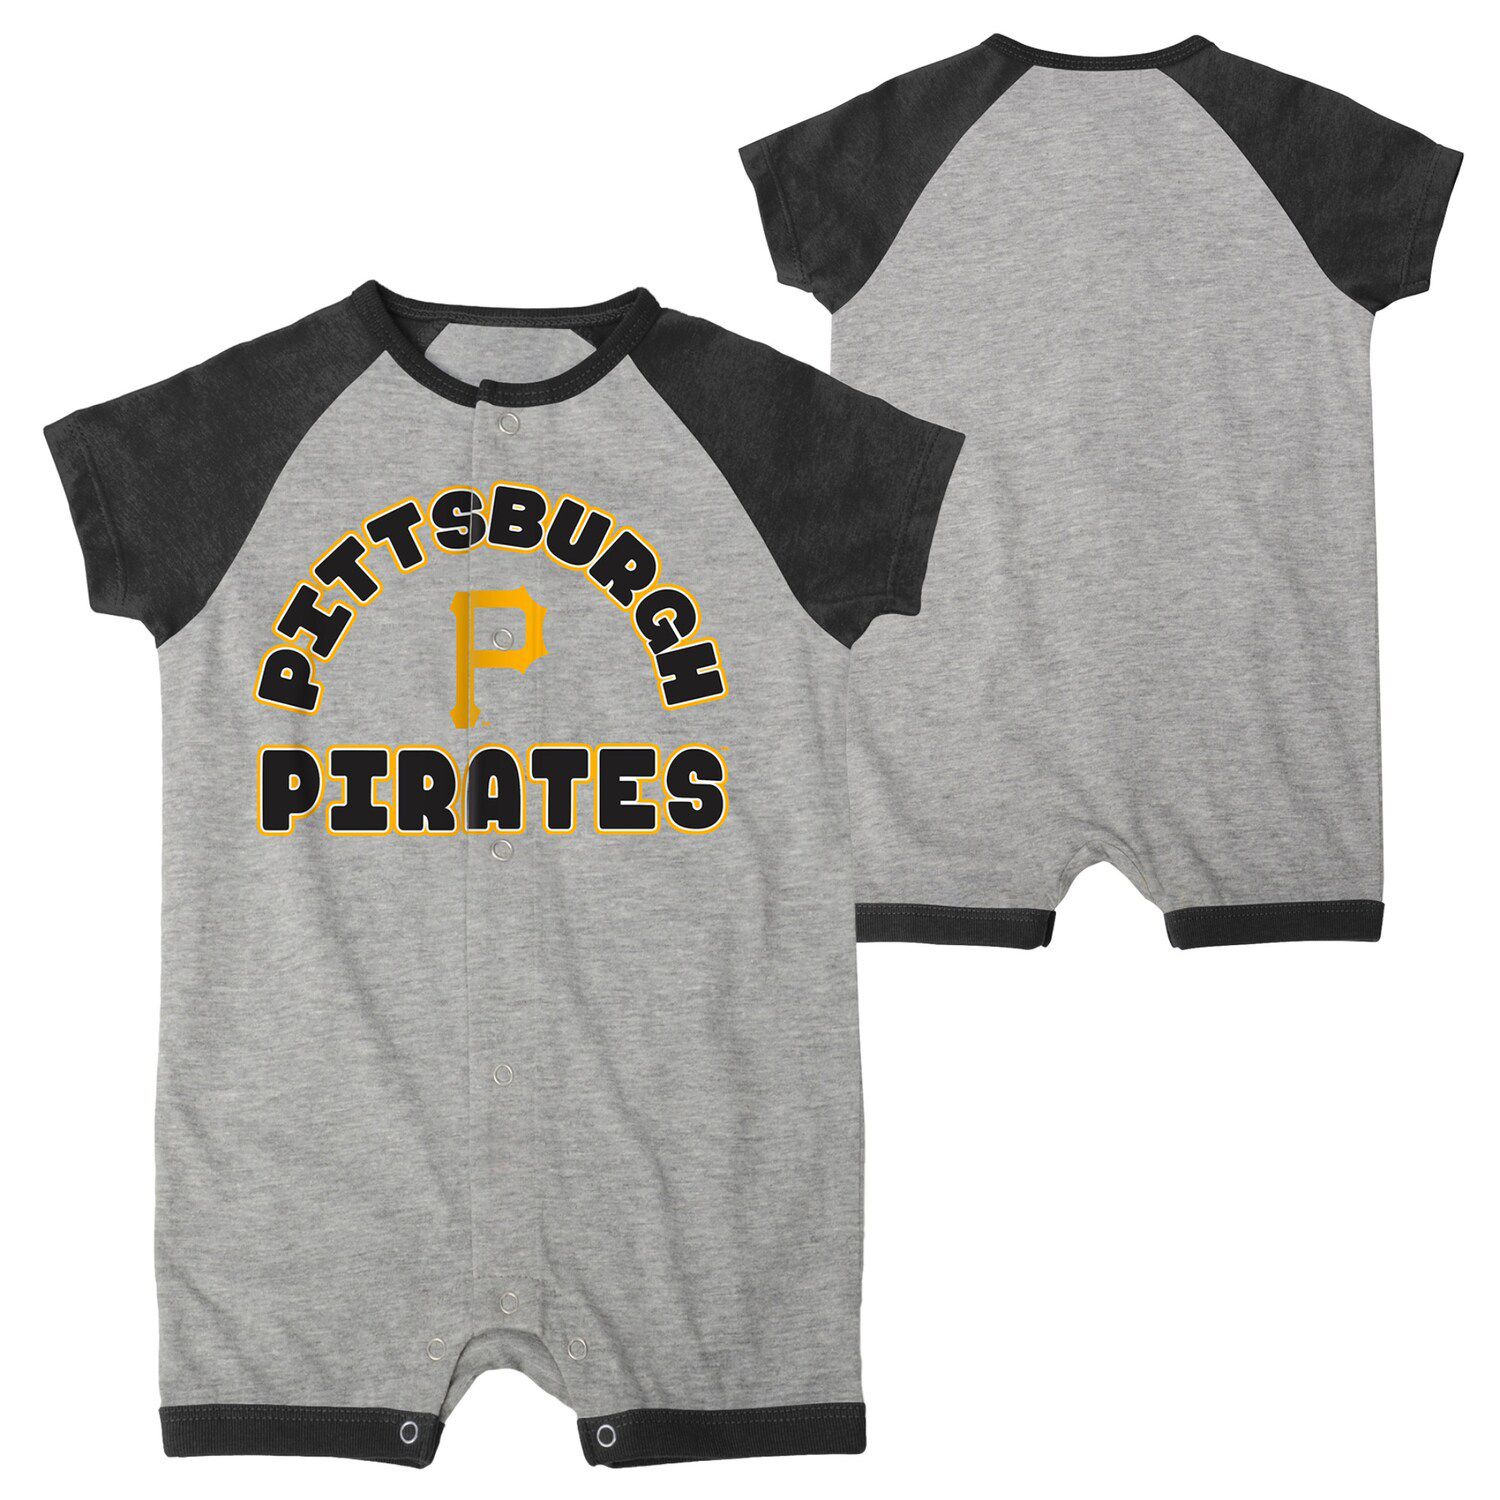 Pittsburgh Pirates Onesies